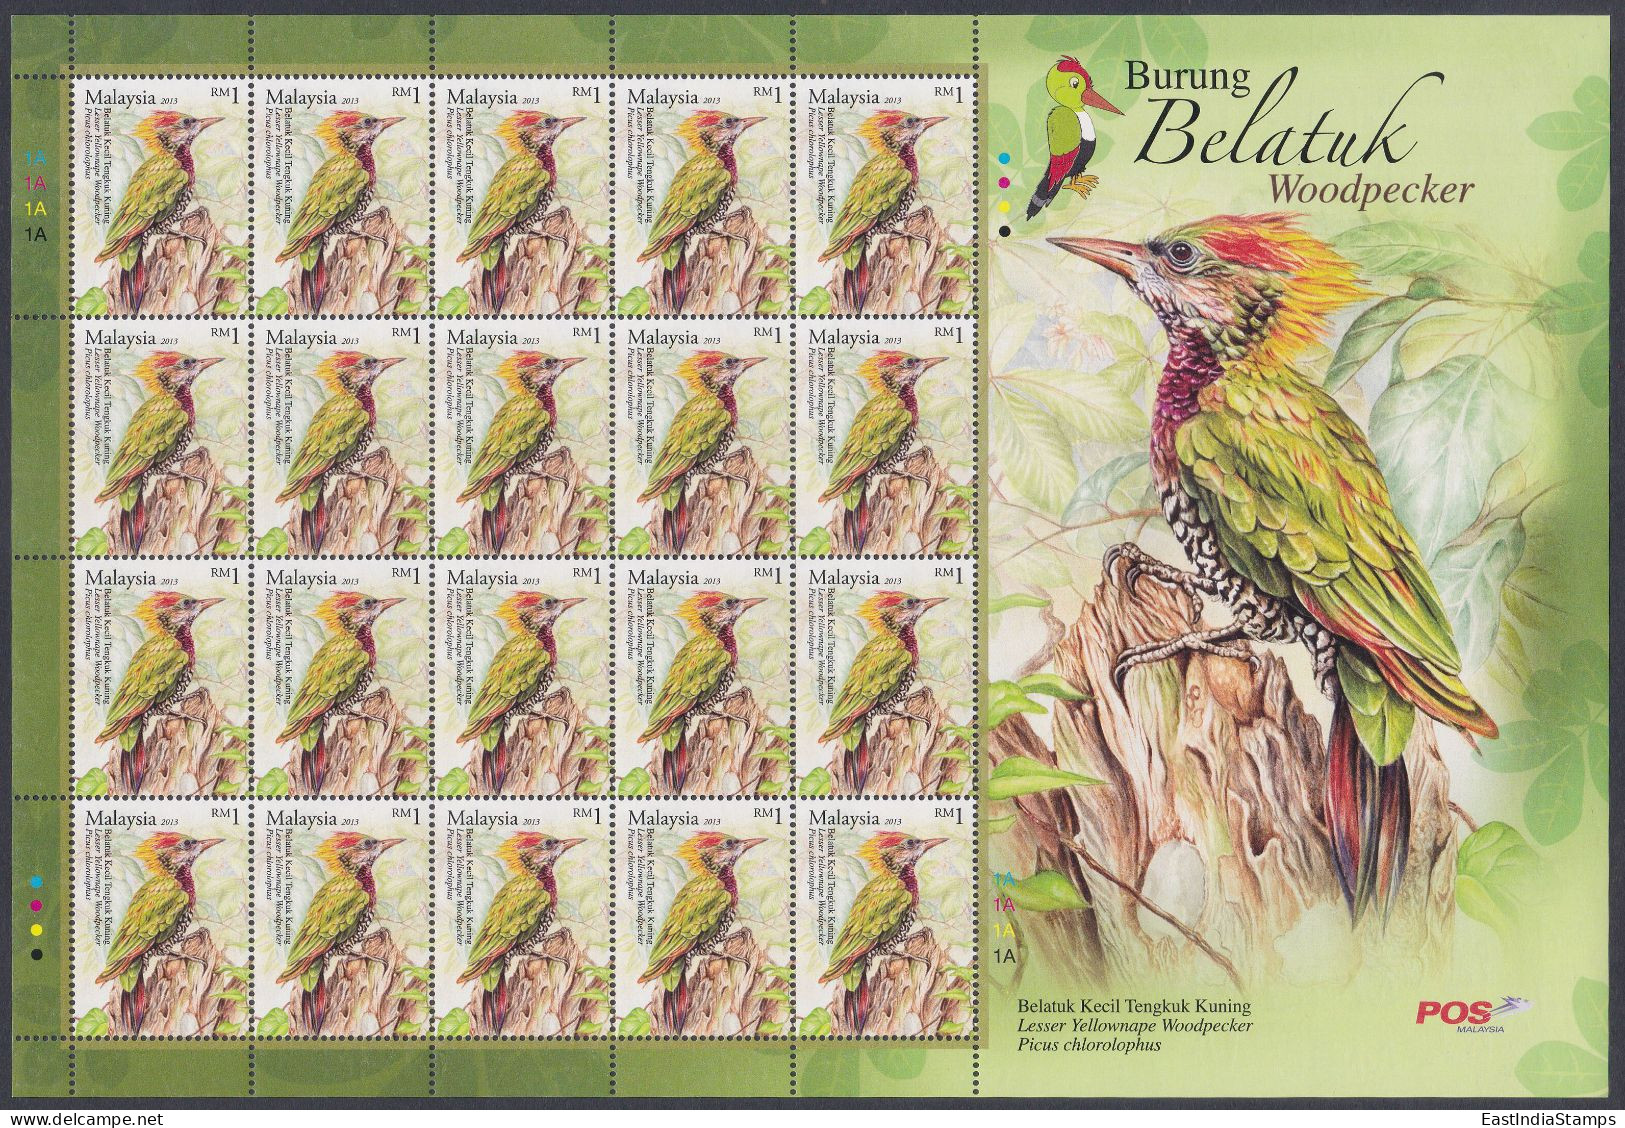 Malaysia 2013 MNH Lesser Yellownape Woodpecker, Bird, Birds, Burung Belatuk, Sheet - Maleisië (1964-...)